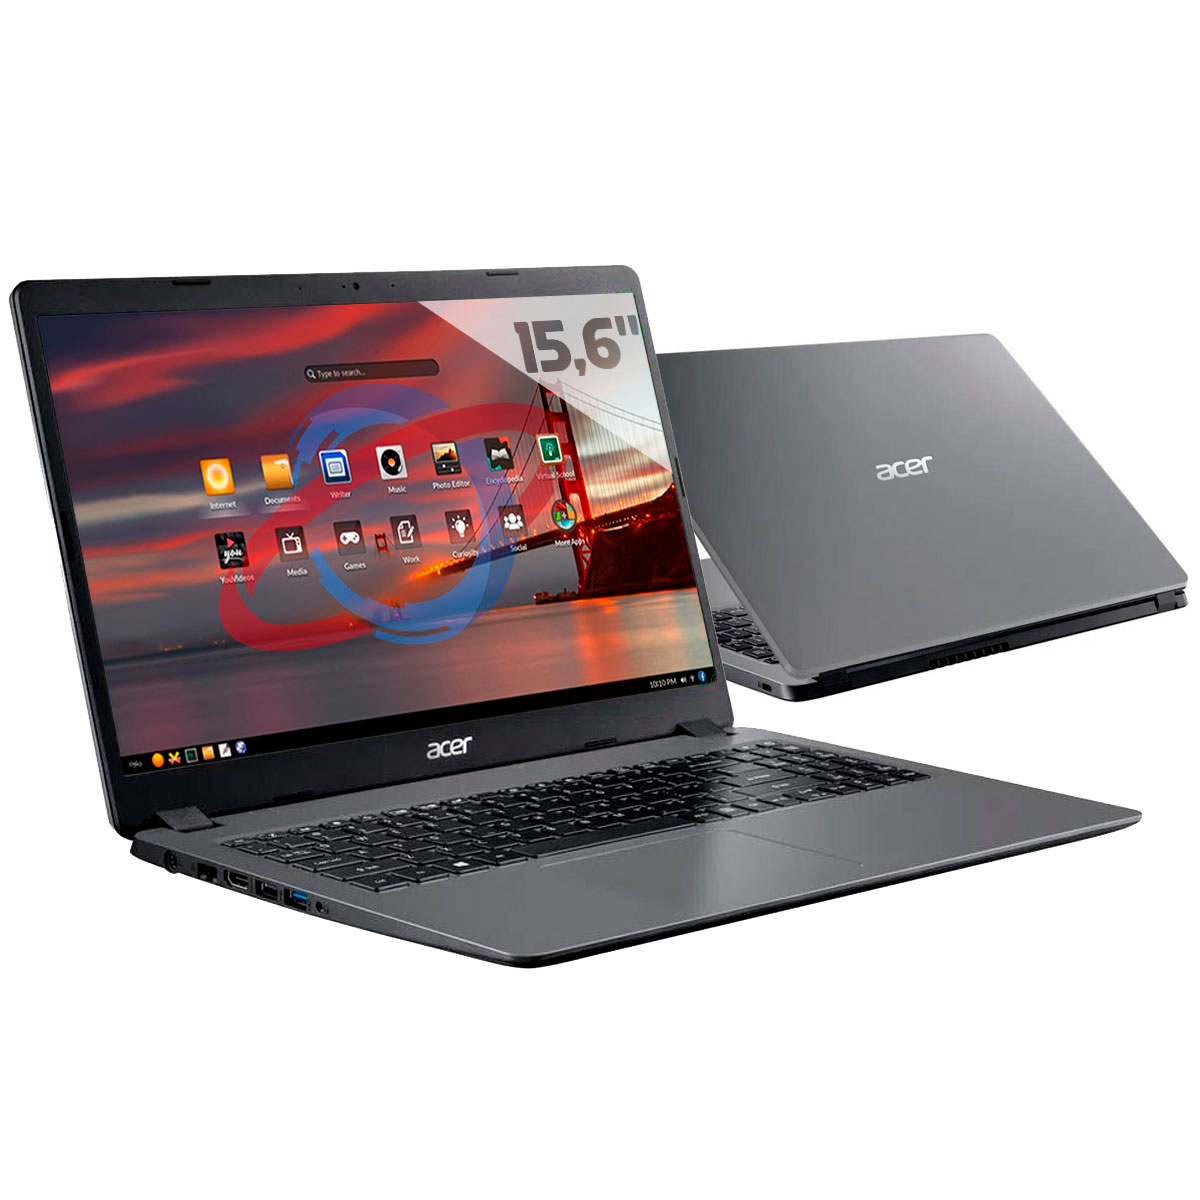 Notebook Acer Aspire A315-56-569F - Intel i5 1035G1, 8GB, SSD 256GB, Tela 15.6